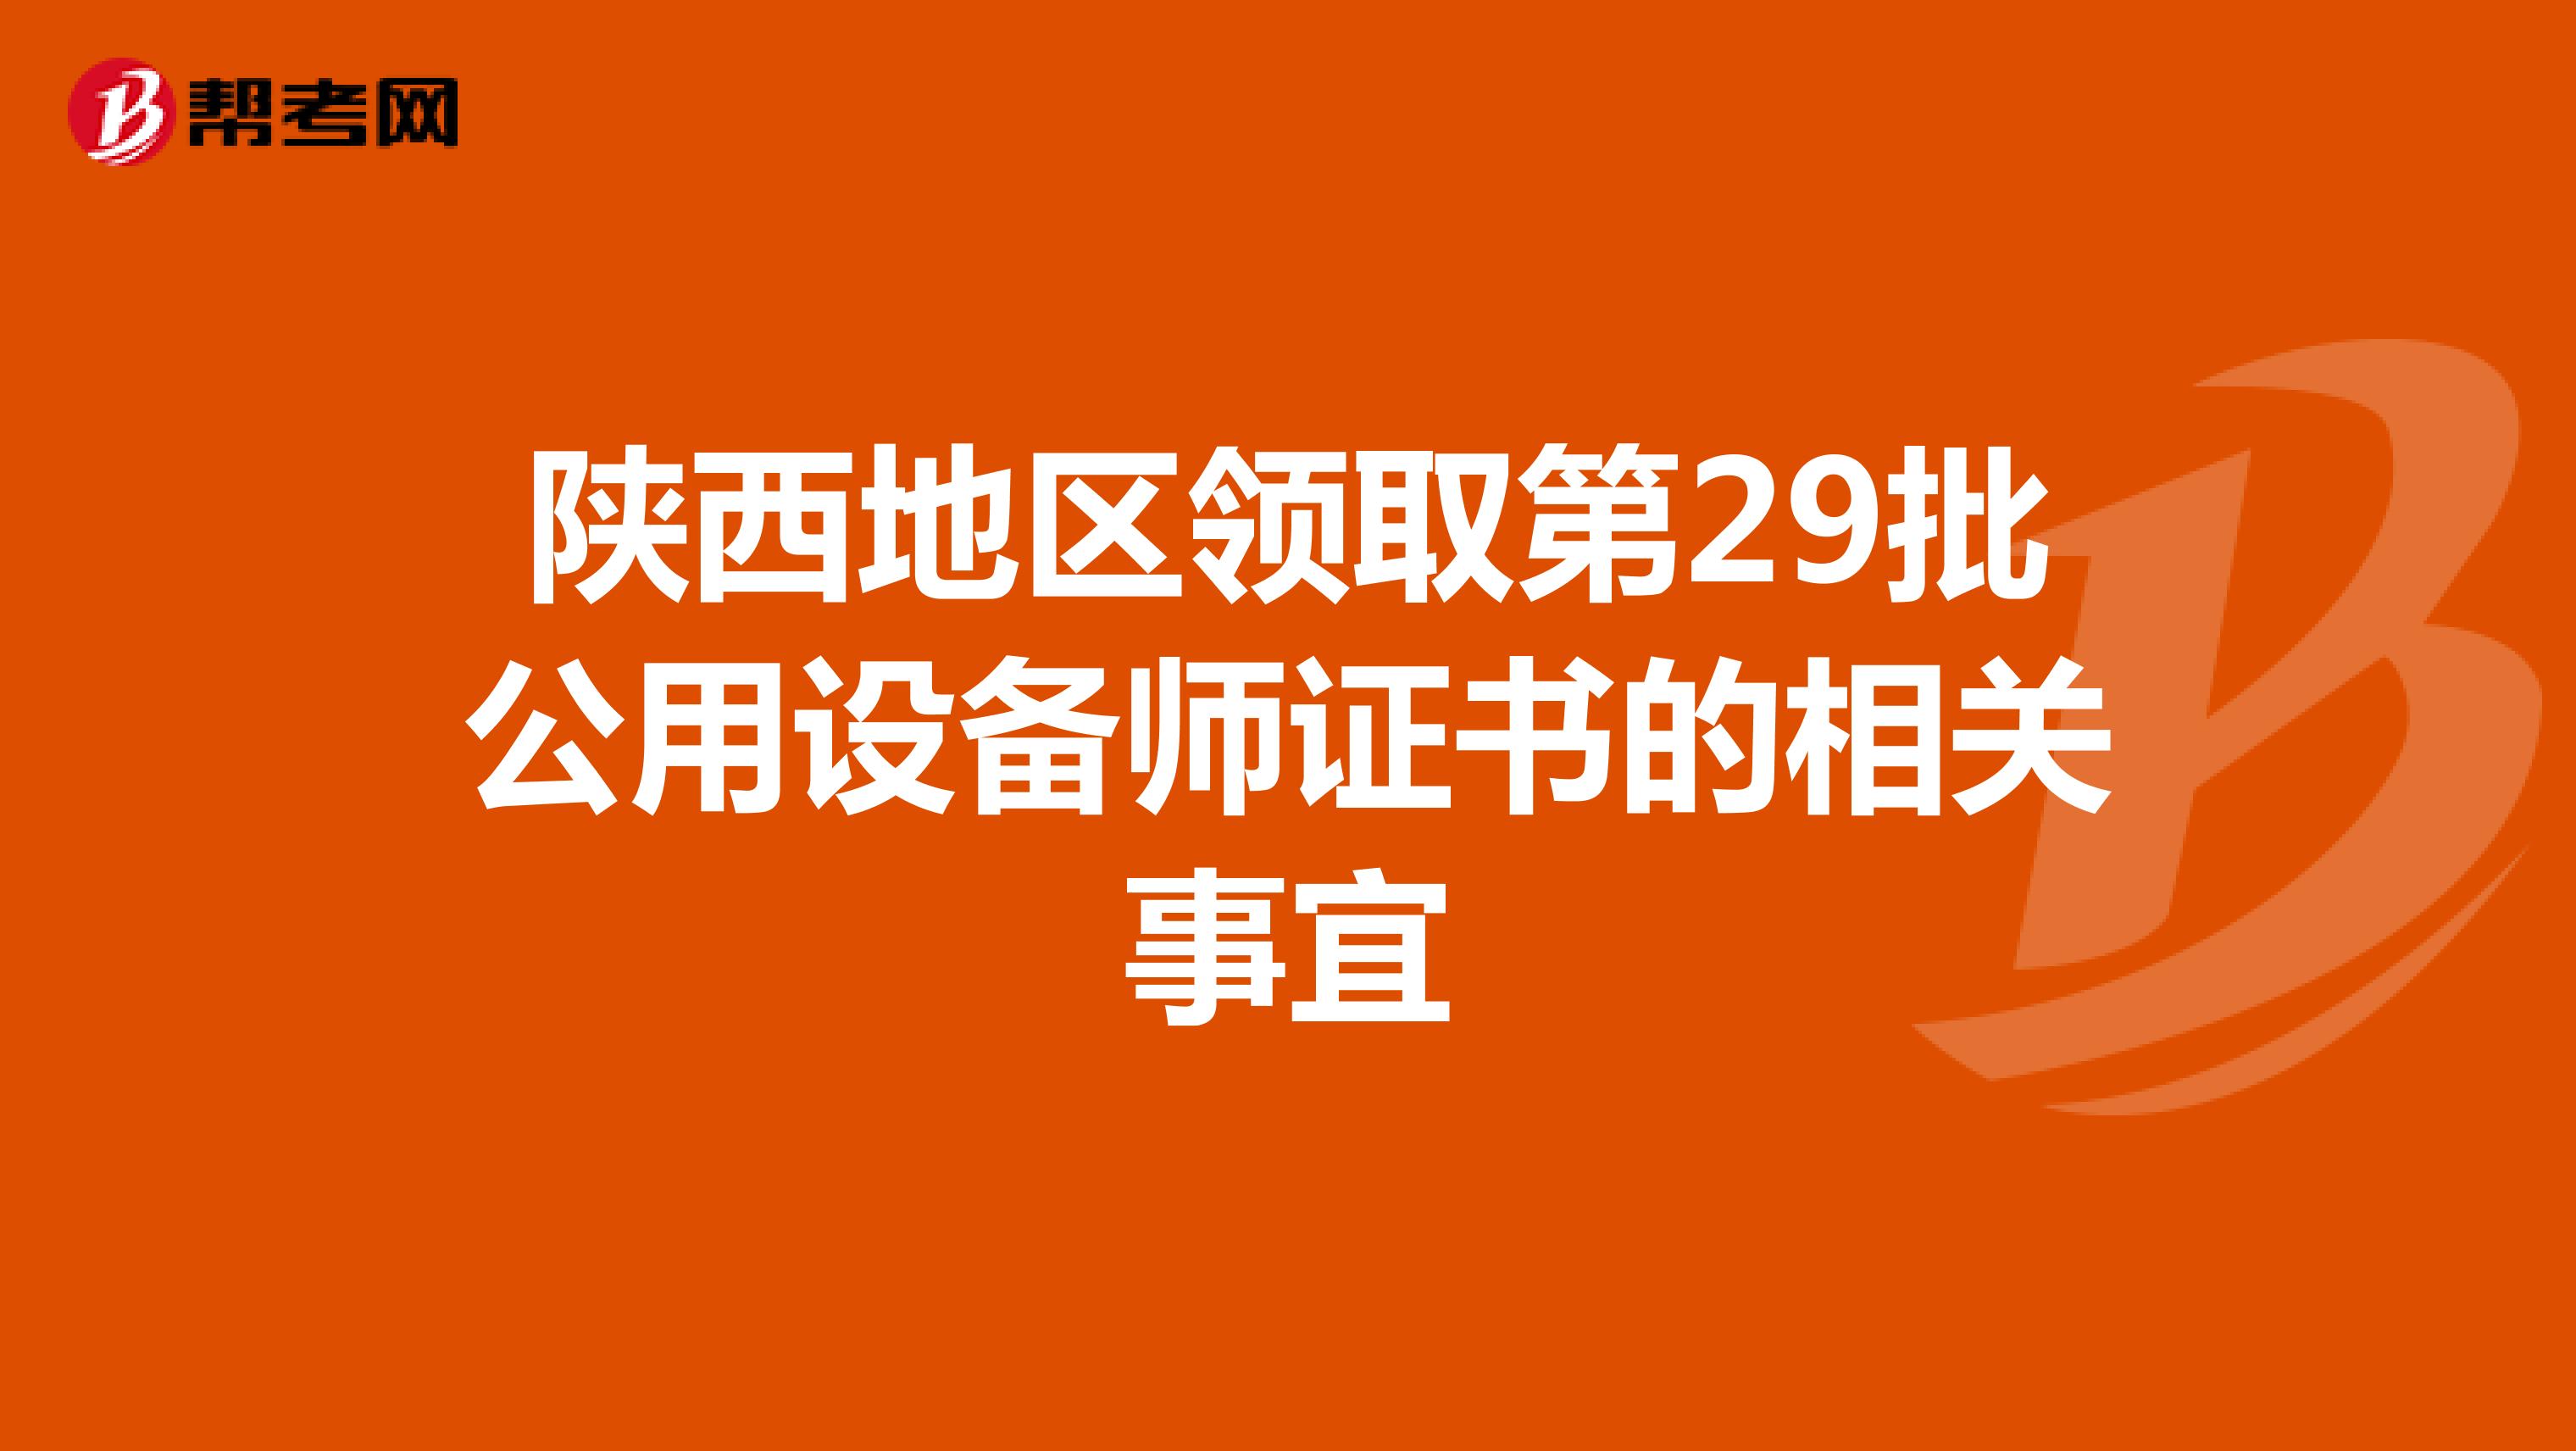 陕西地区领取第29批公用设备师证书的相关事宜